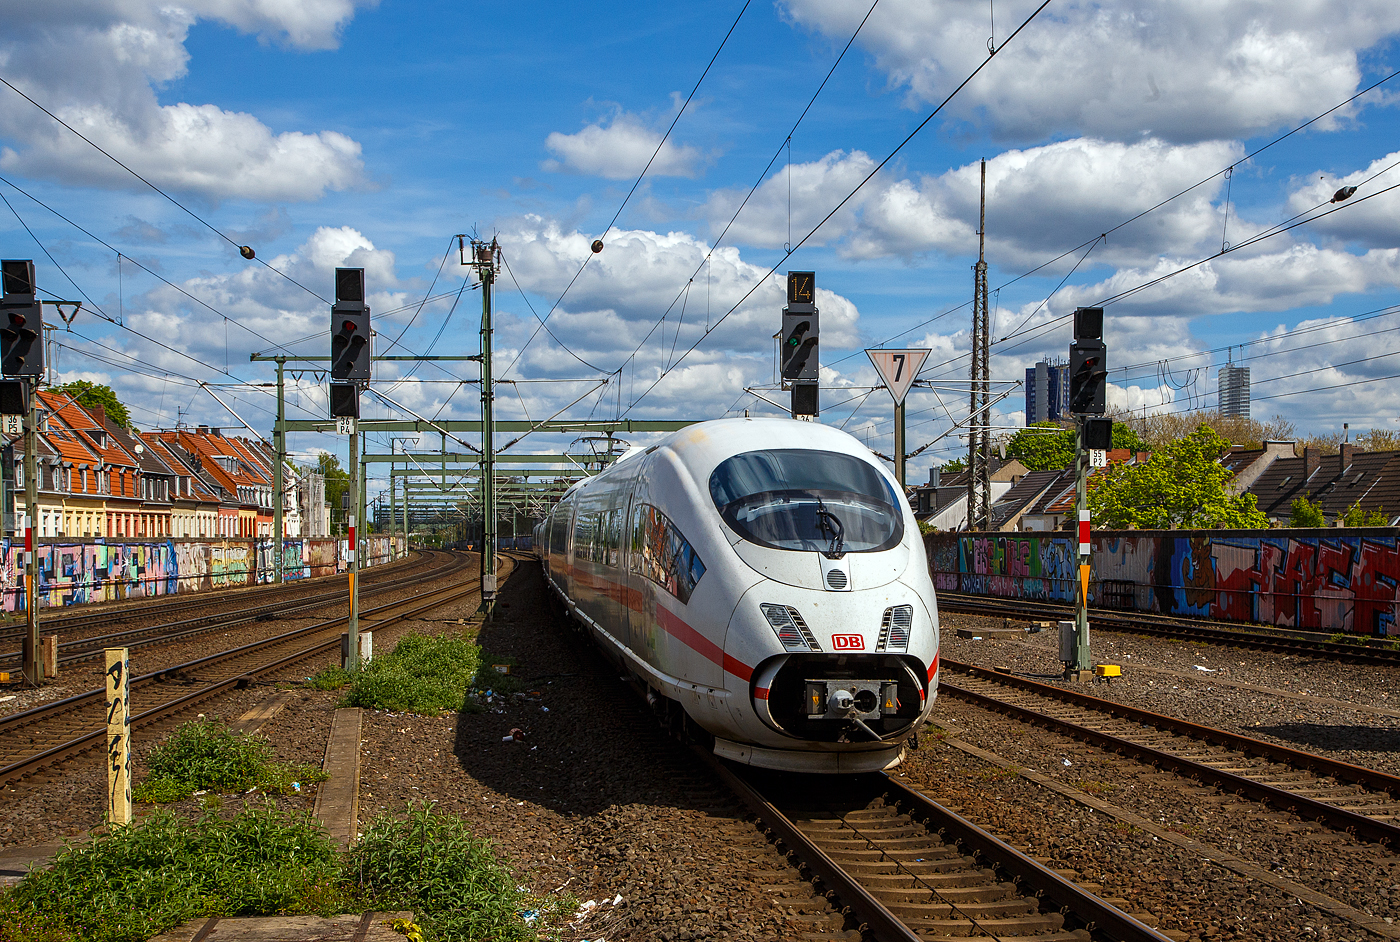 Der ICE 3 M – Triebzug 4654 – DB 406 054-7 (ex NS 406 054-7) / 406 581 fährt am 30.04.2023 durch den Bahnhof Köln-Ehrenfeld in Richtung Köln Hbf.

Der Triebzug hat die Zulassungen für Deutschland, die Niederlanden und Belgien.Dem als ICE 123 eingesetzte Triebzug 4654 fuhr am 11.01.2011 in den Niederlanden, zwischen Arnhem und Emmerich, ein Güterzug in die Flanke, woraufhin der führende Wagen des ICE entgleiste und der zweite Wagen ebenfalls beschädigt wurde. Unglücksursache war der Diebstahl von Kupferkabeln. Die beschädigten Wagen 406 554 und 406 654 aus dem Triebzug 4654 wurden im Dezember 2011 durch die Wagen 406 581 und 681 aus dem abgestellten Triebzug 4681 ersetzt. Seit 1. Januar 2012 gehört der ICE buchmäßig der DB Fernverkehr AG und nicht mehr der NS - Nederlandse Spoorwegen.